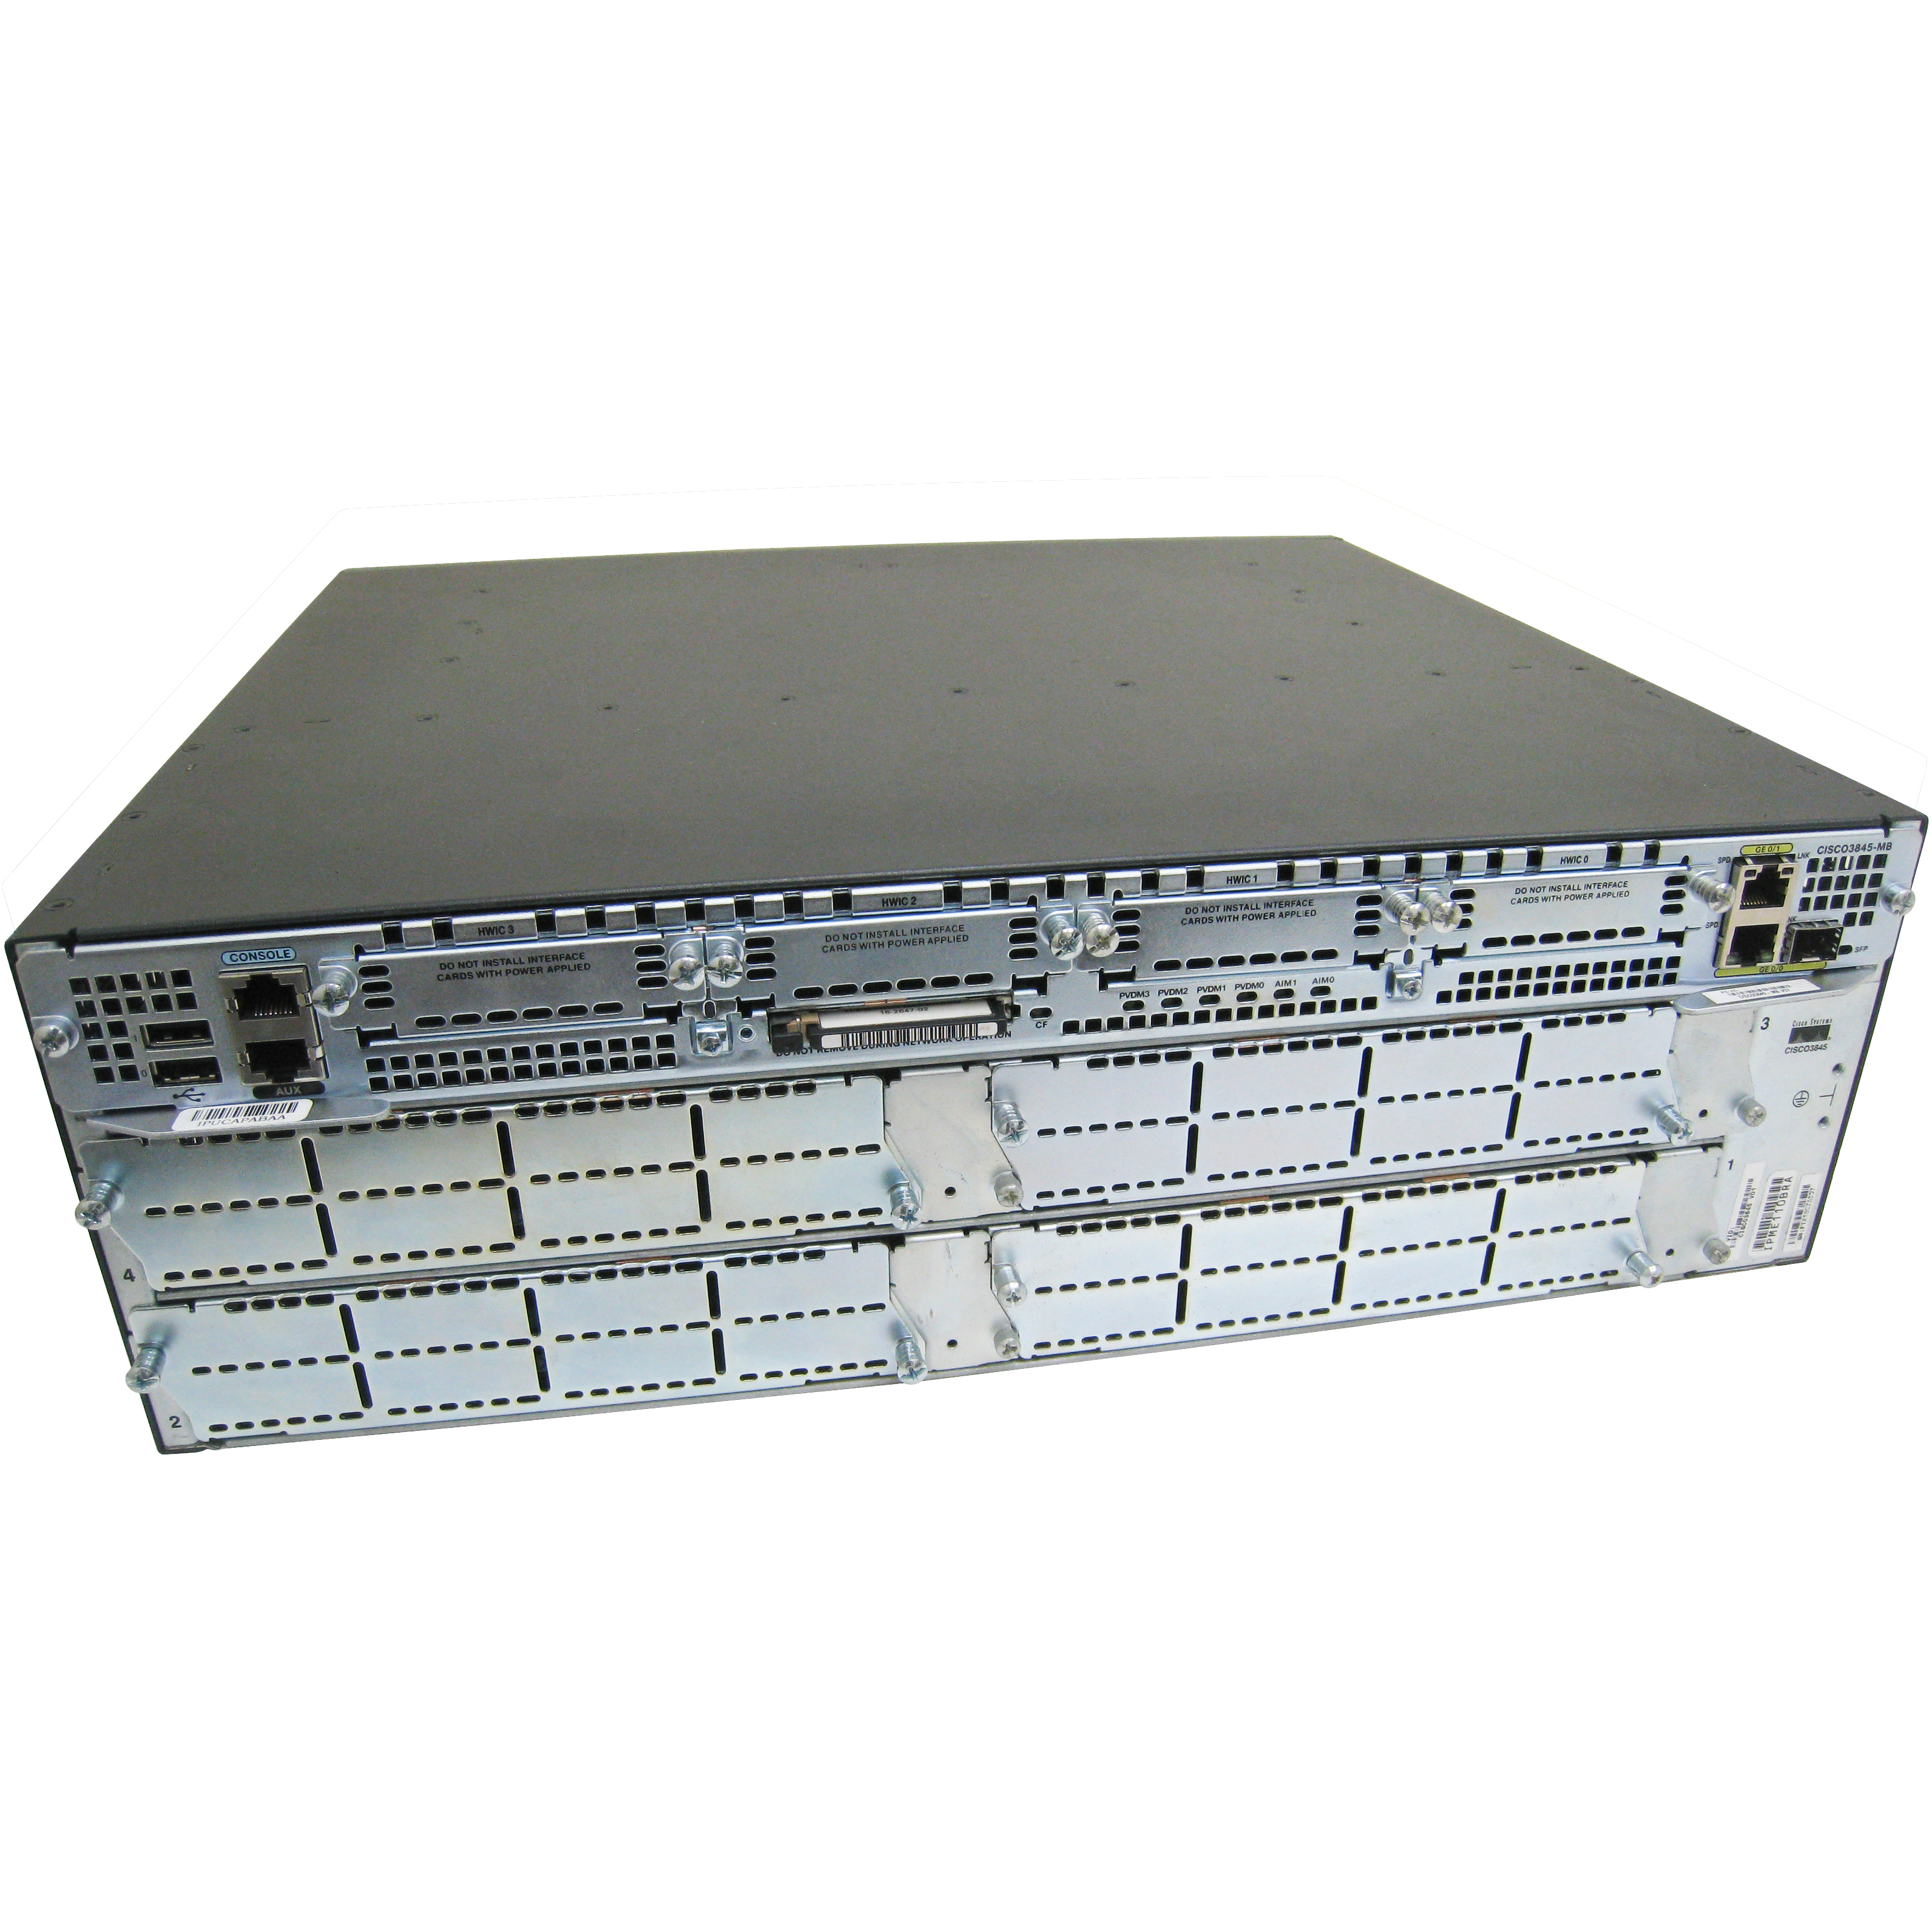 Cisco CISCO3845-CCME/K9